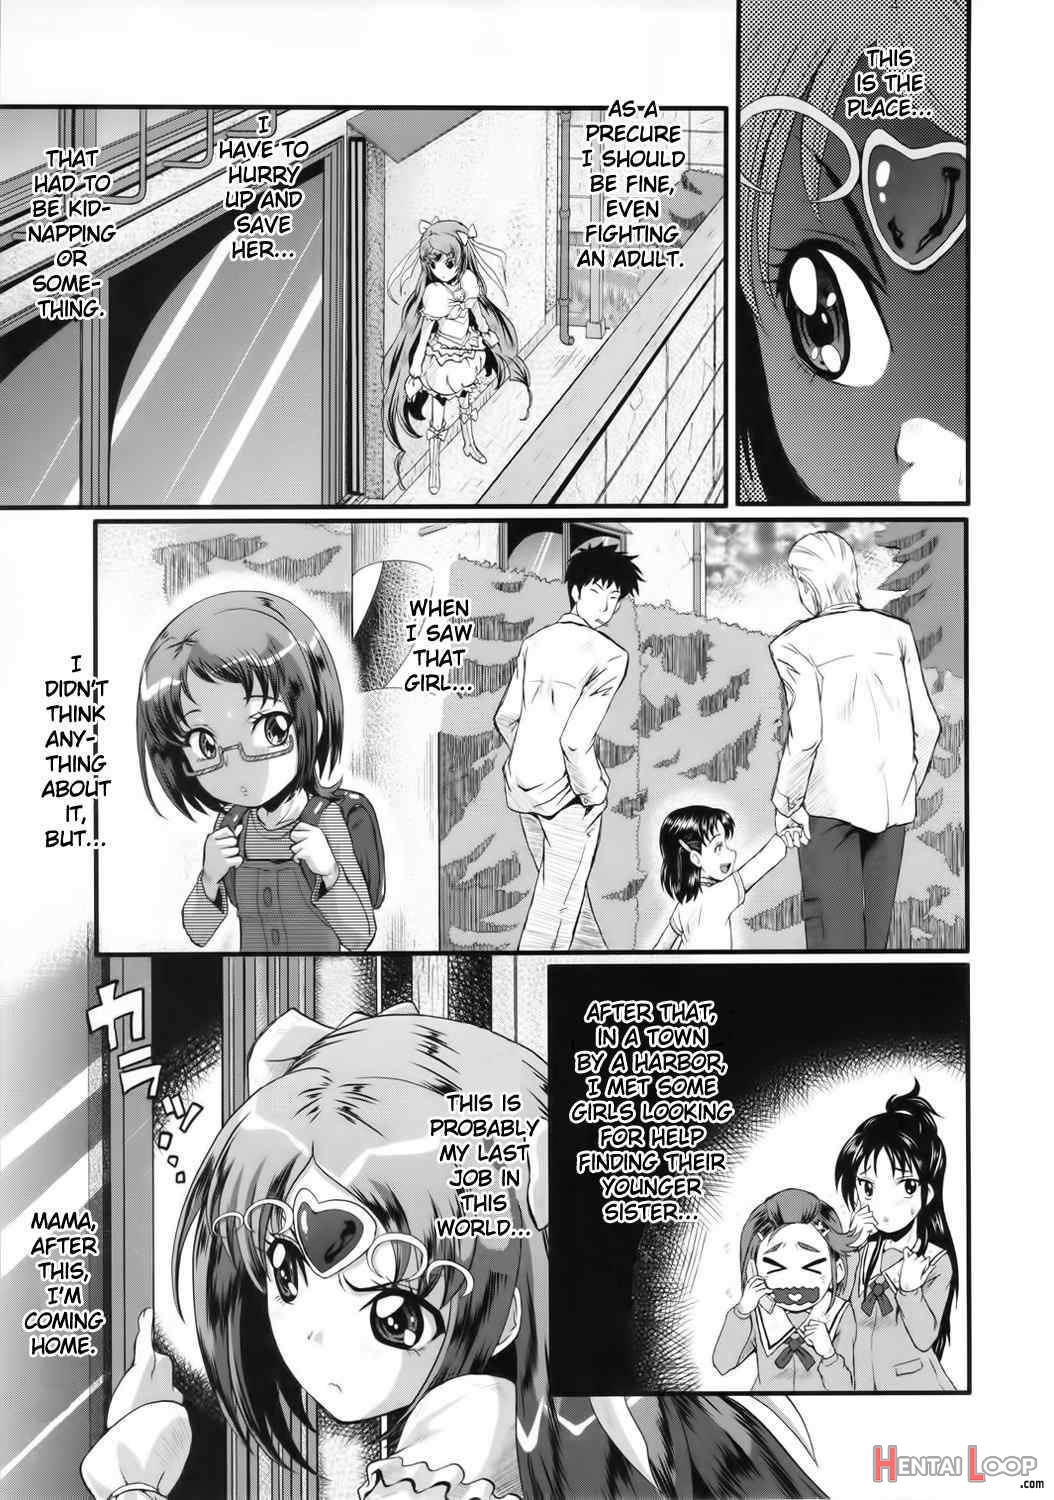 Urabambi Vol. 45 Nabutte Lolicure ~ochinchin No Tame Ni Ganbarimasu!~ Ni Ganbarimasu!~ page 2